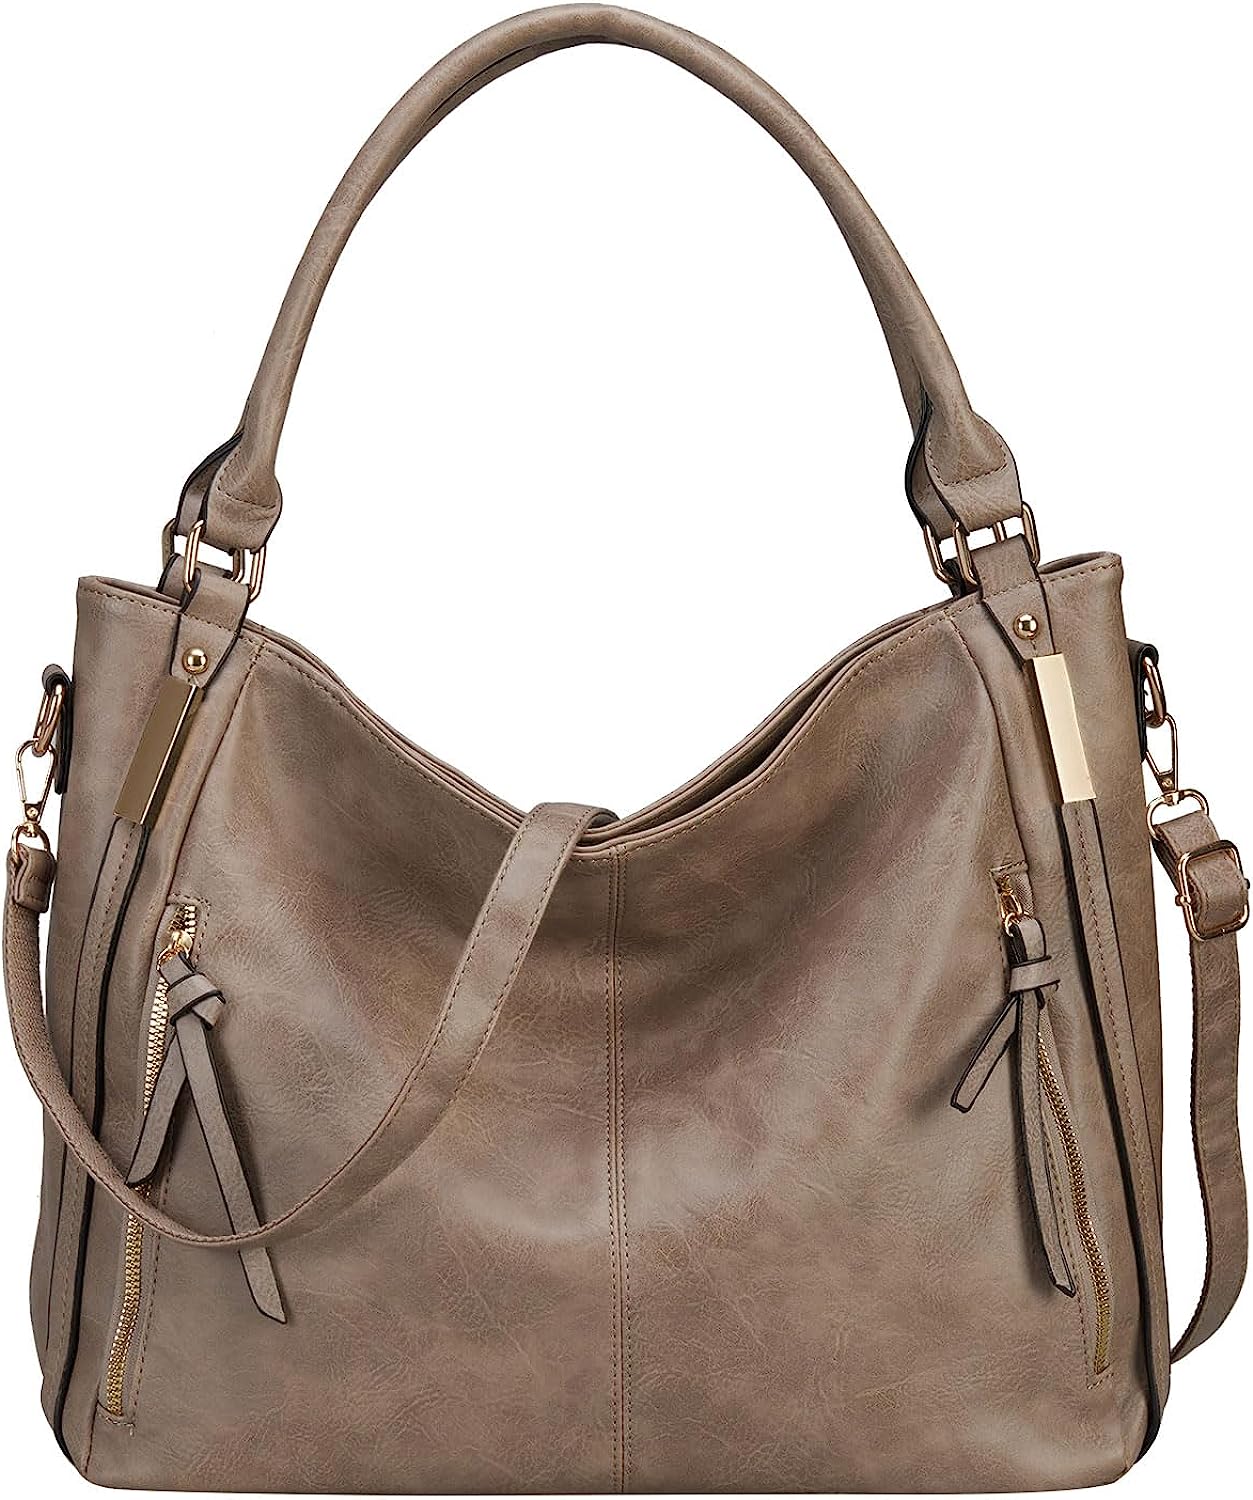 Top Handle Satchel Handbags Shoulder Bag Faux Leather